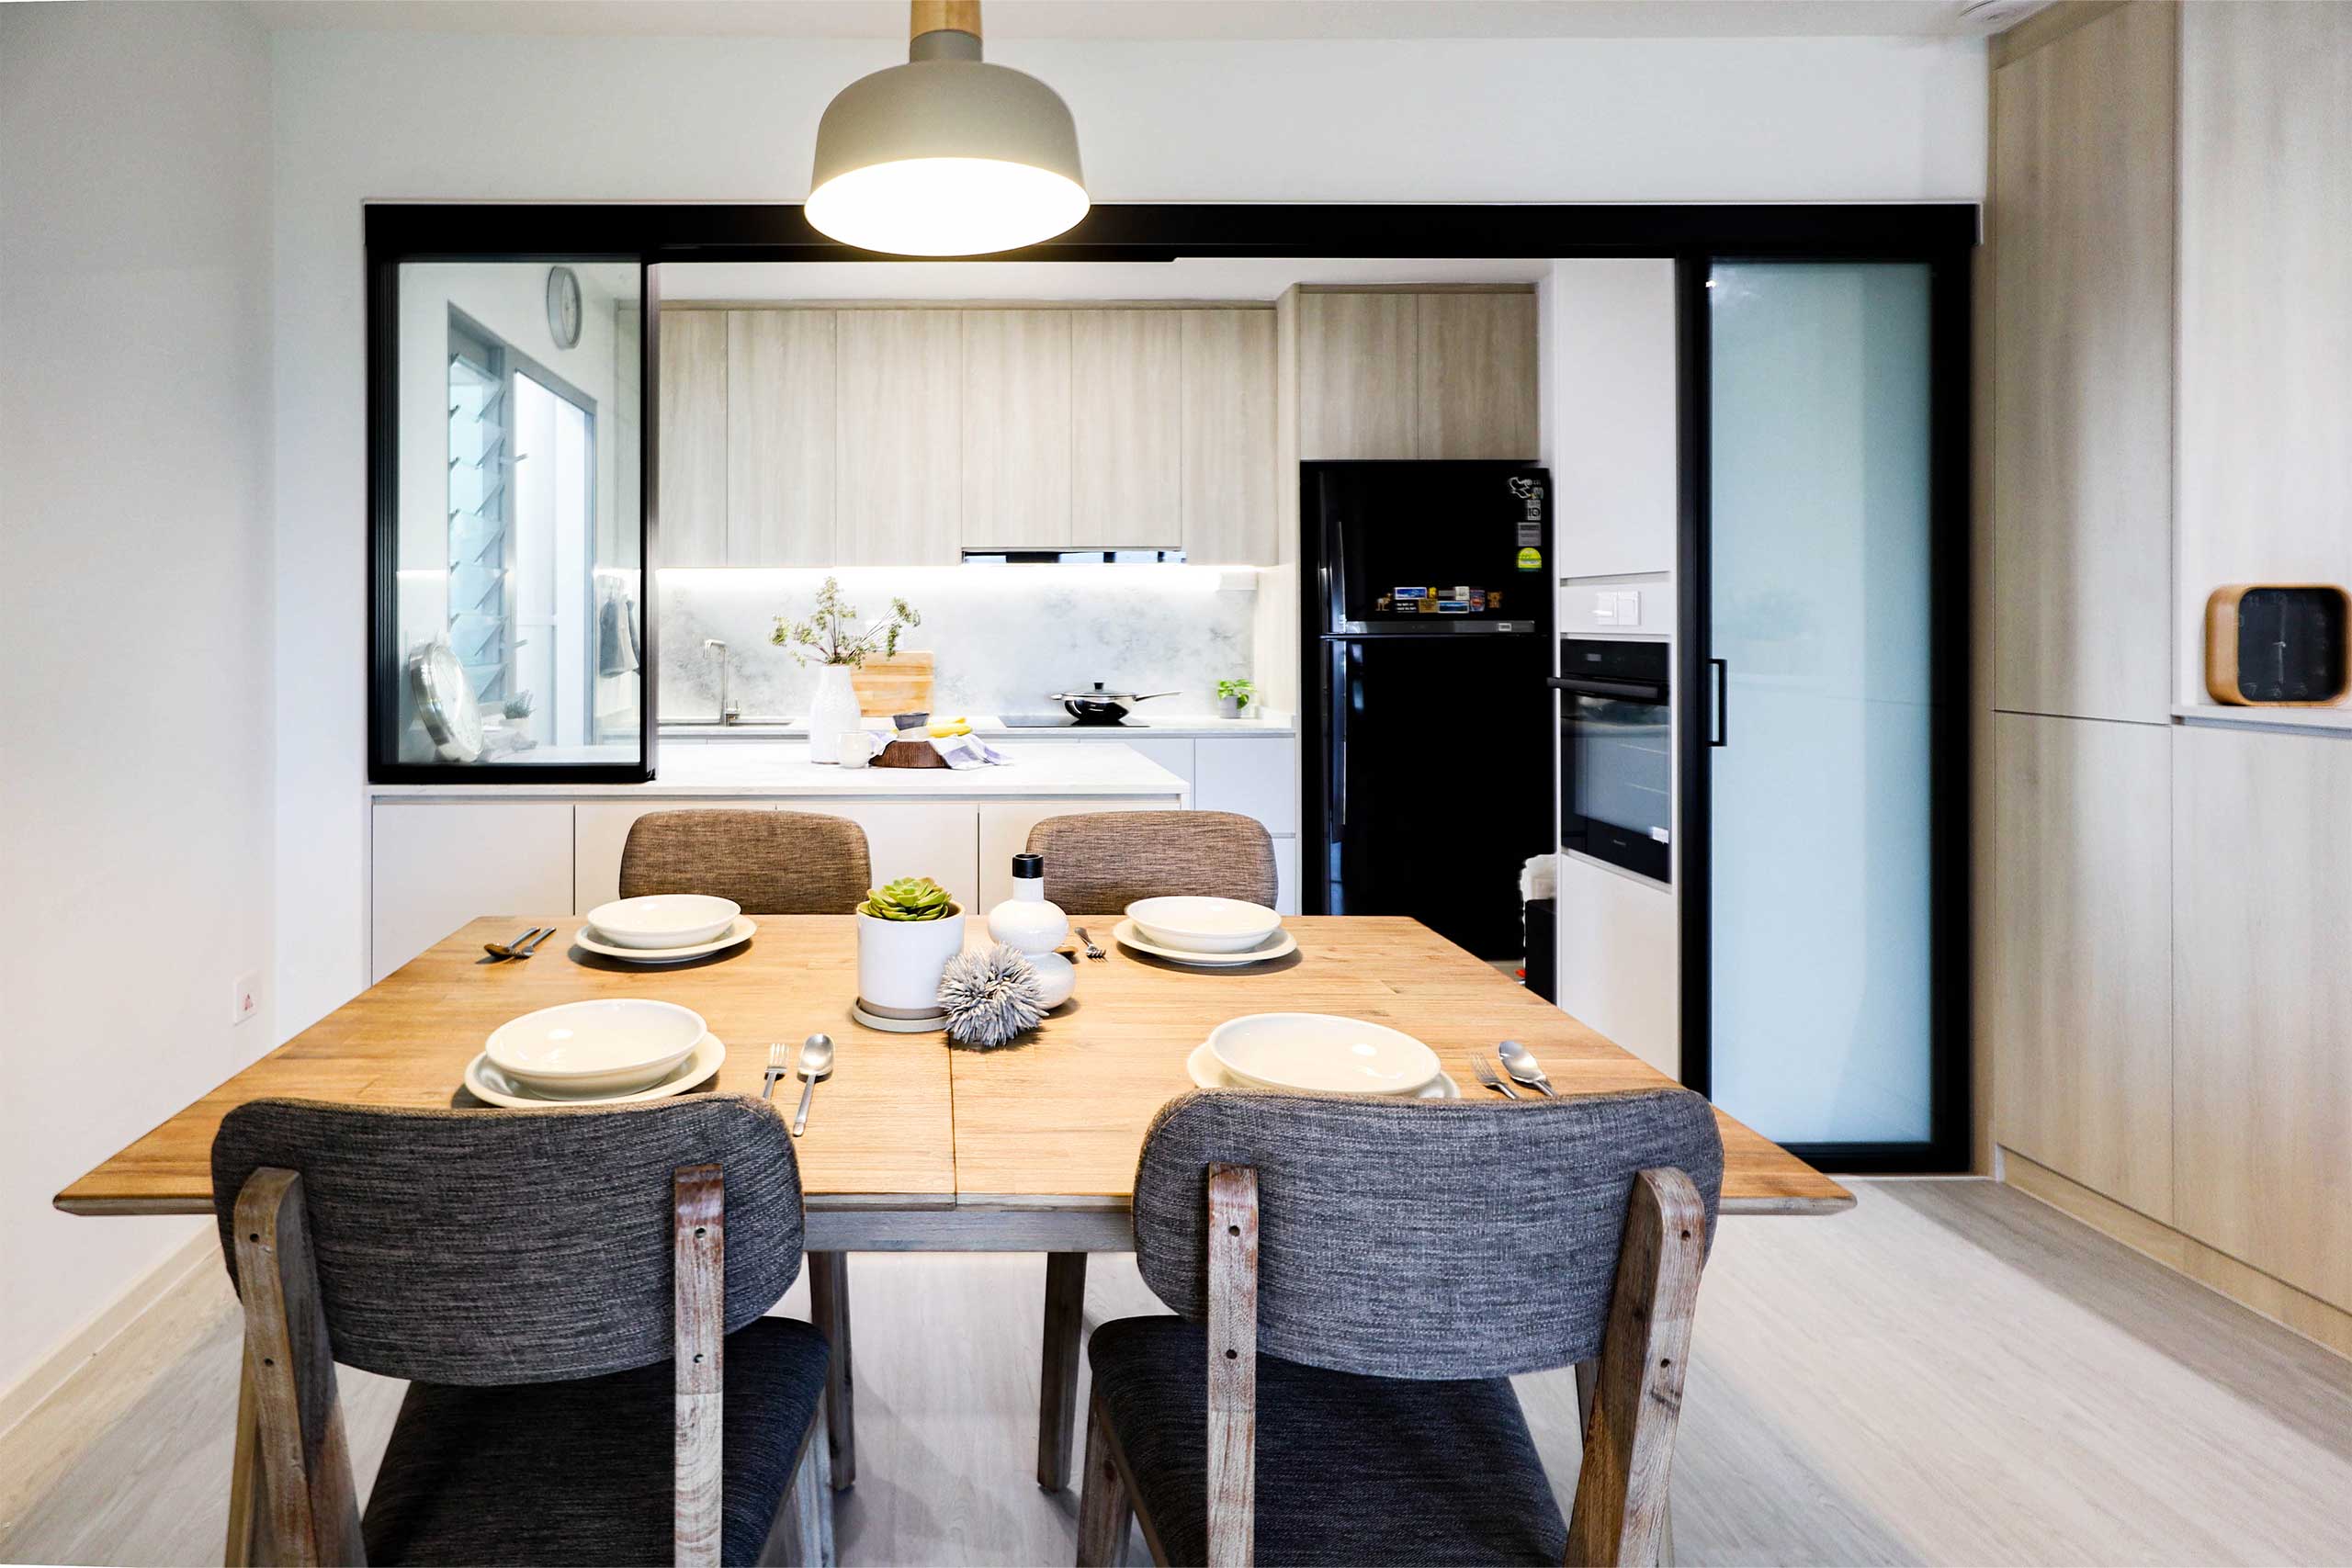 4 room HDB kitchen modern contemporary interior design Margaret drive